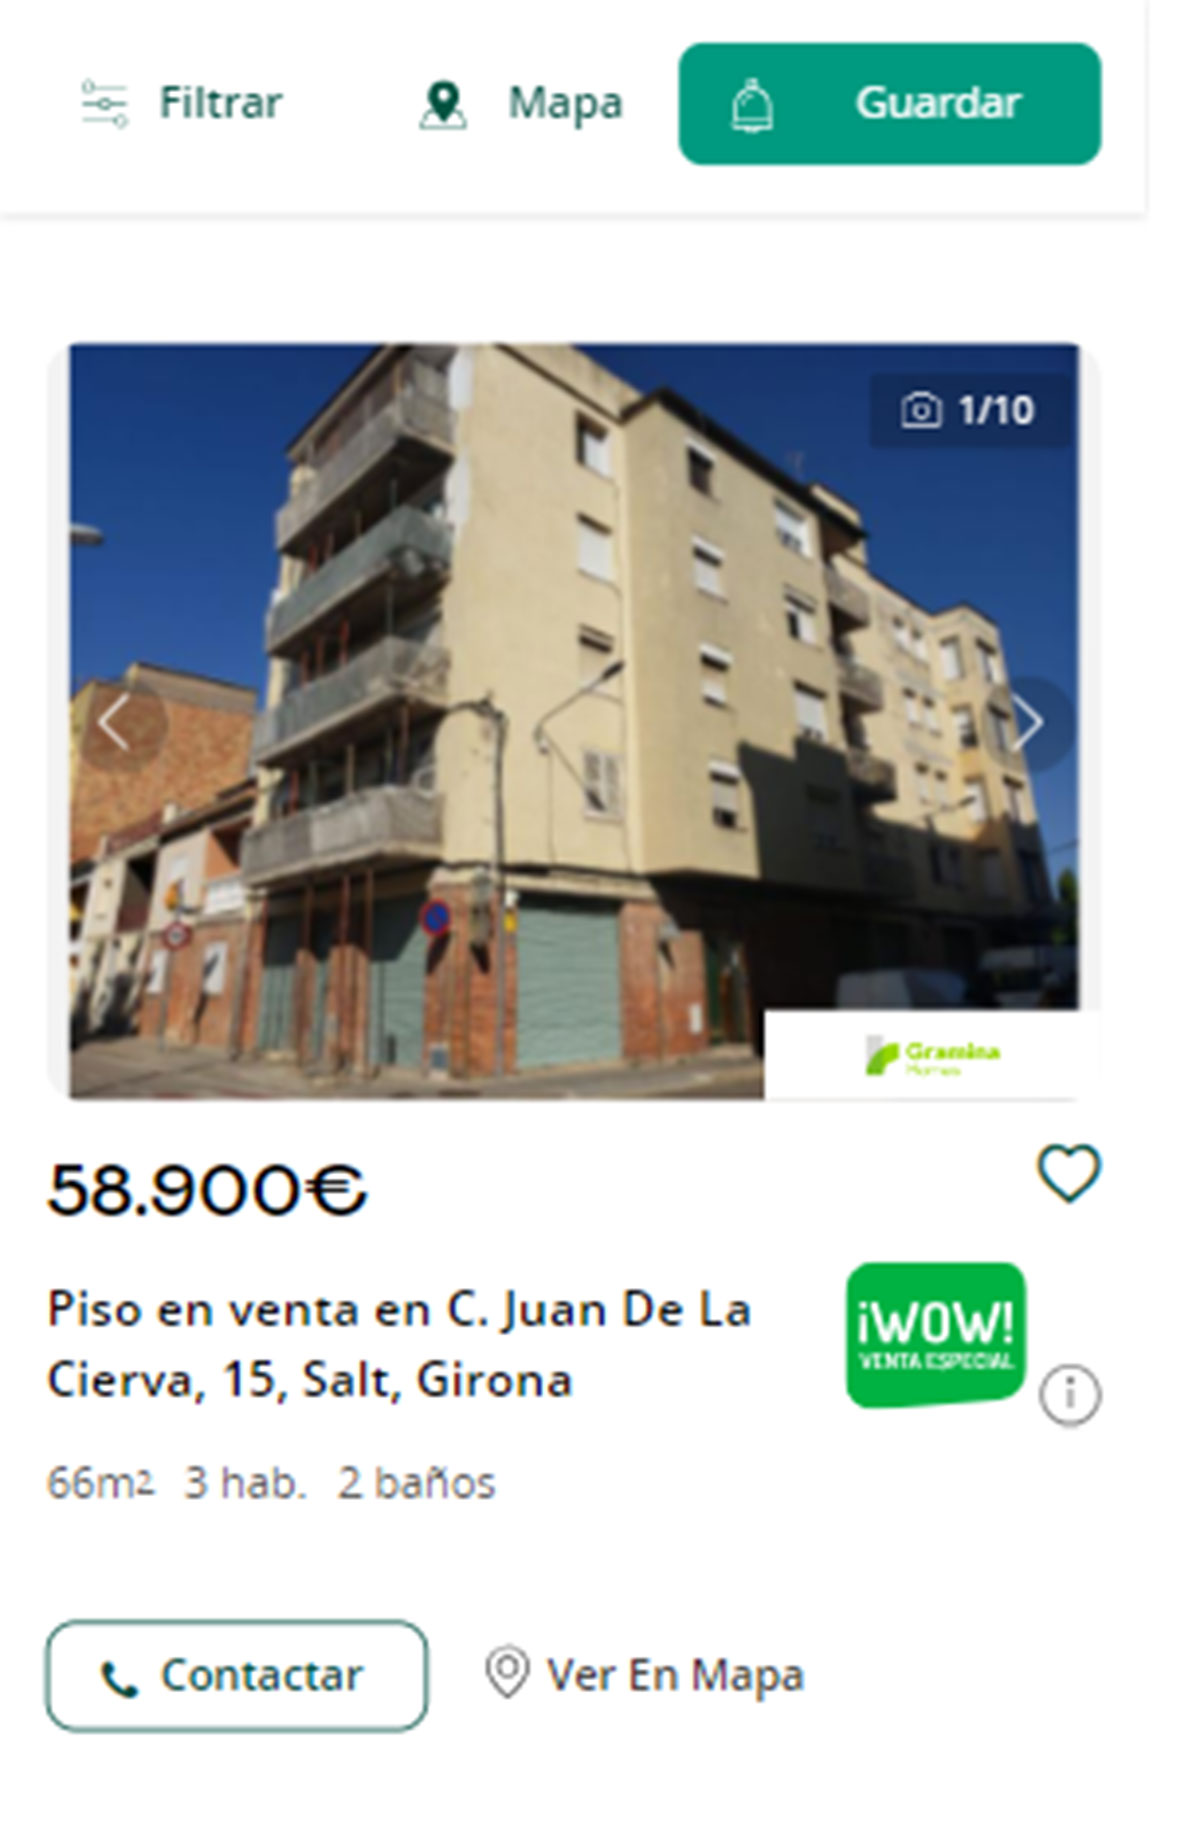 Piso en Girona por 58.000 euros